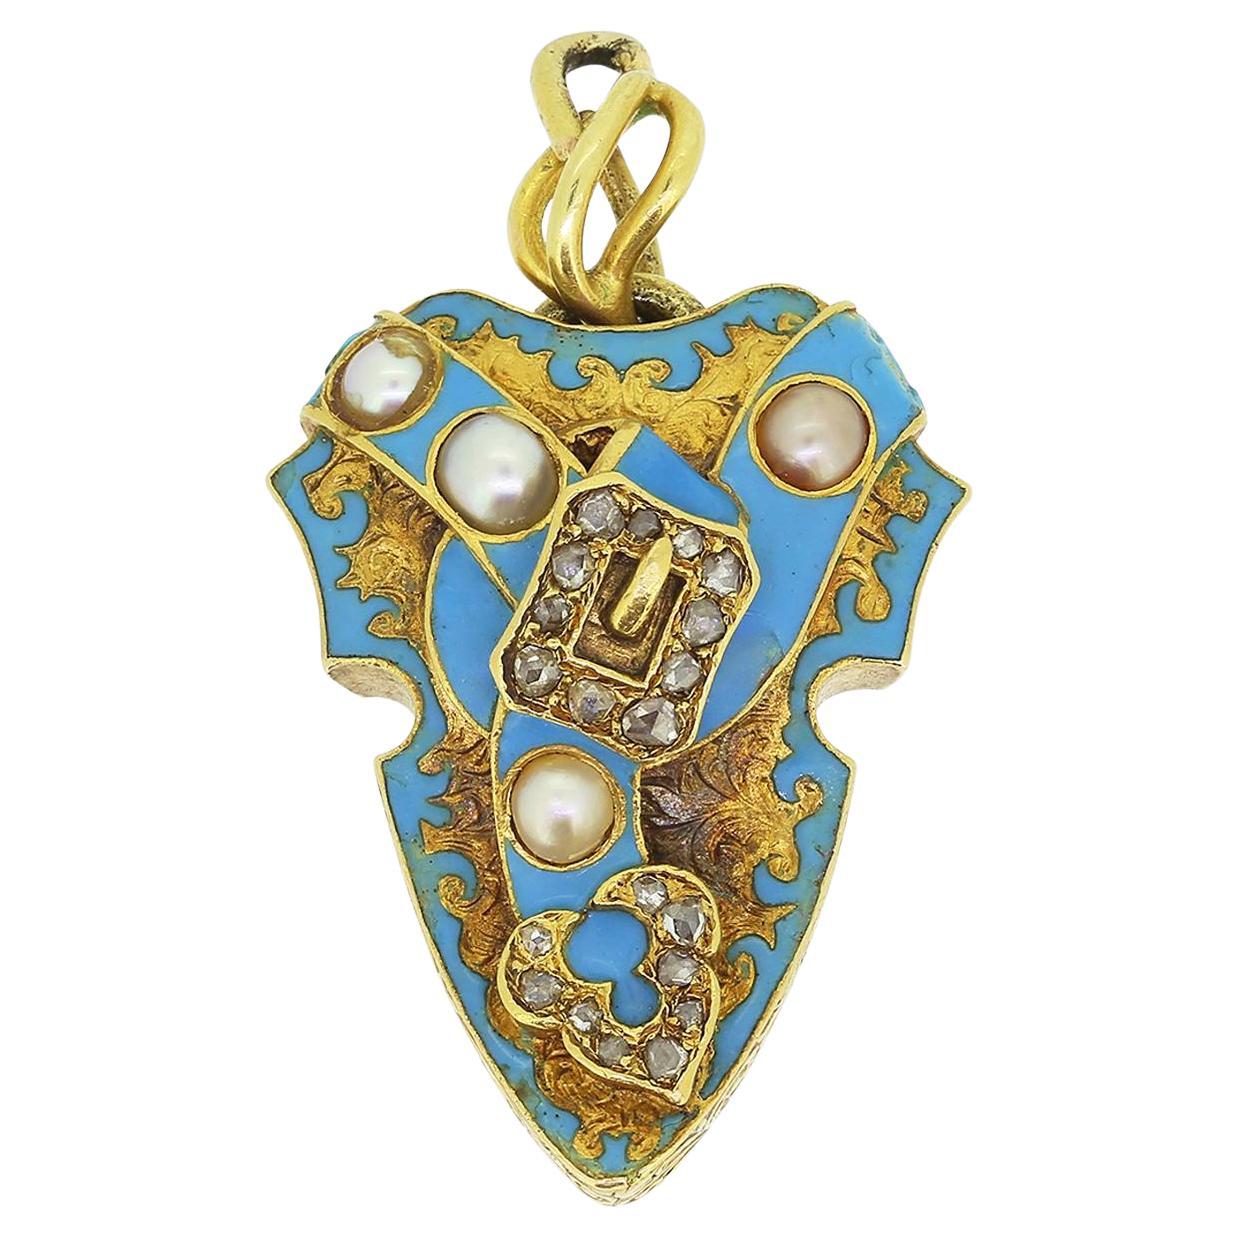 Viktorianische Perle Diamant und Emaille Schnalle Medaillon Anhänger